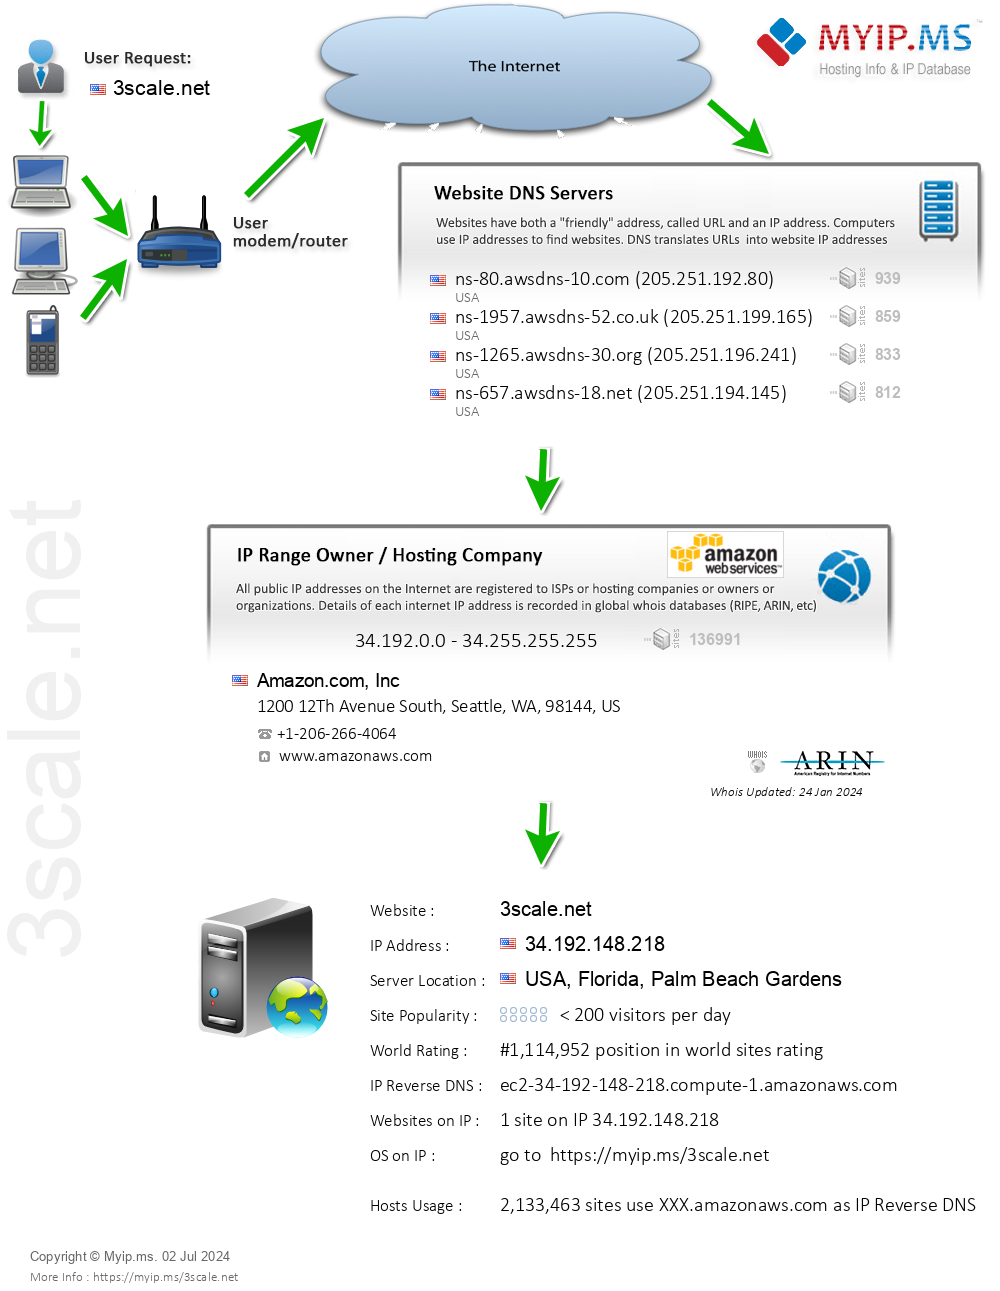 3scale.net - Website Hosting Visual IP Diagram